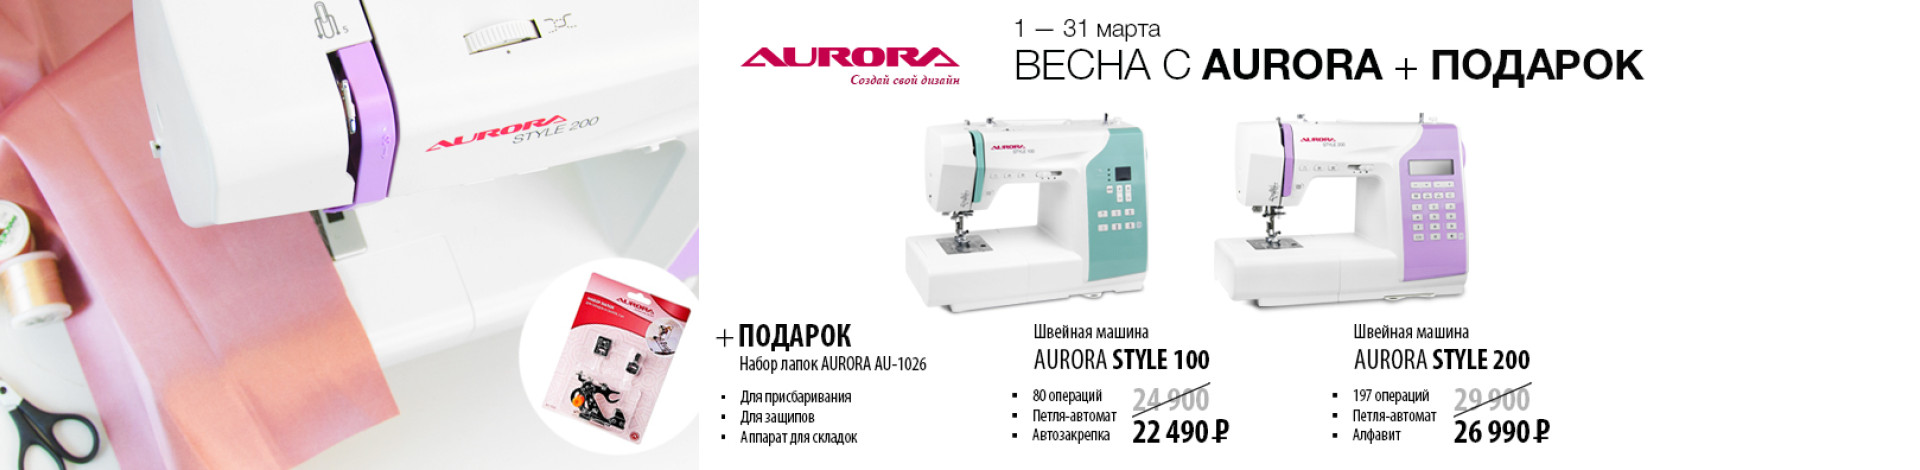 С 1 по 31 марта действуют скидки на швейные машины Aurora Style 100 и Aurora Style 200